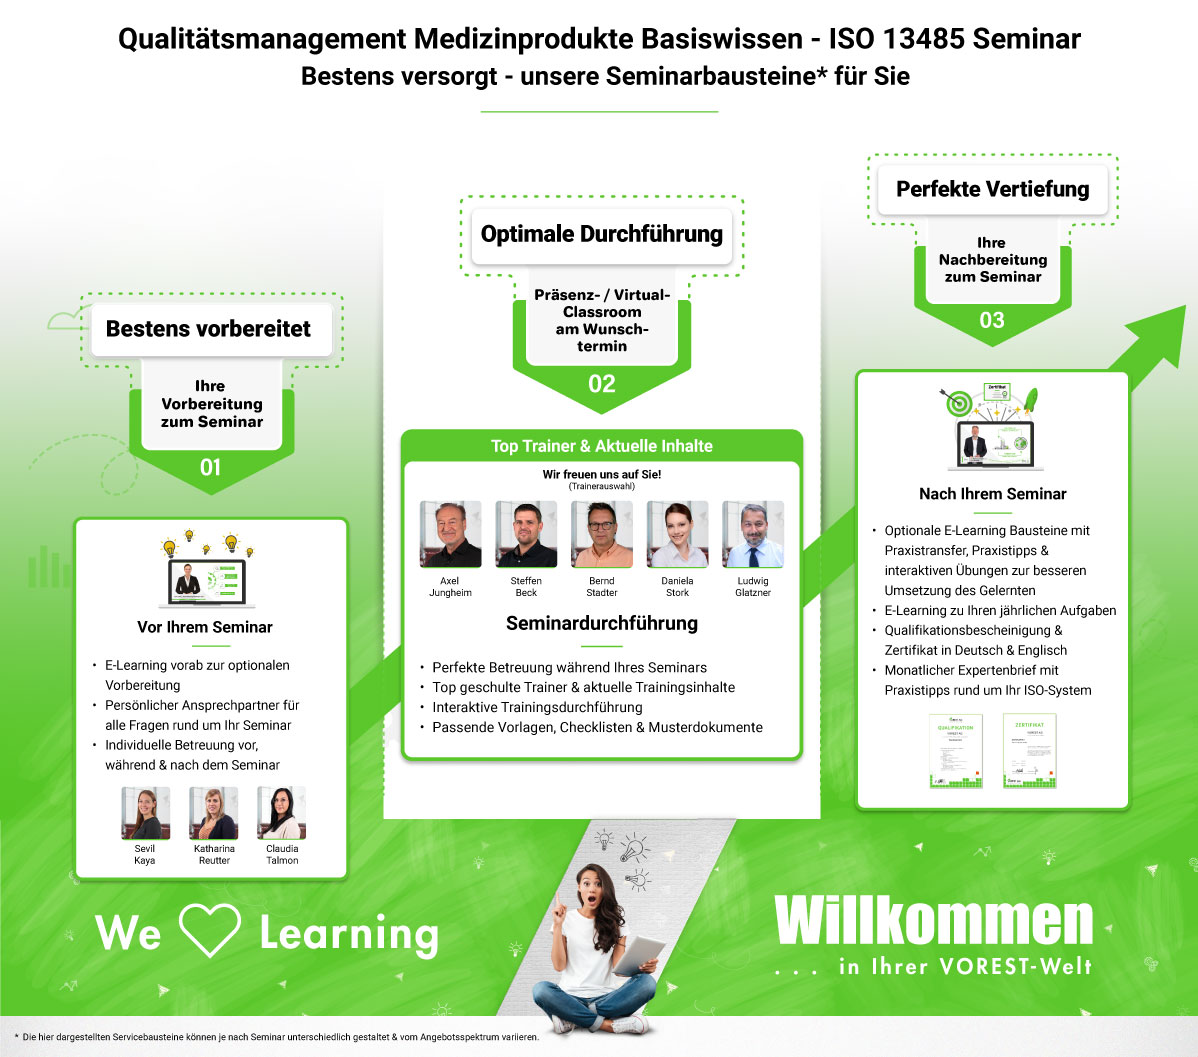 Qualitätsmanagement Medizinprodukte Basiswissen - ISO 13485 Seminar